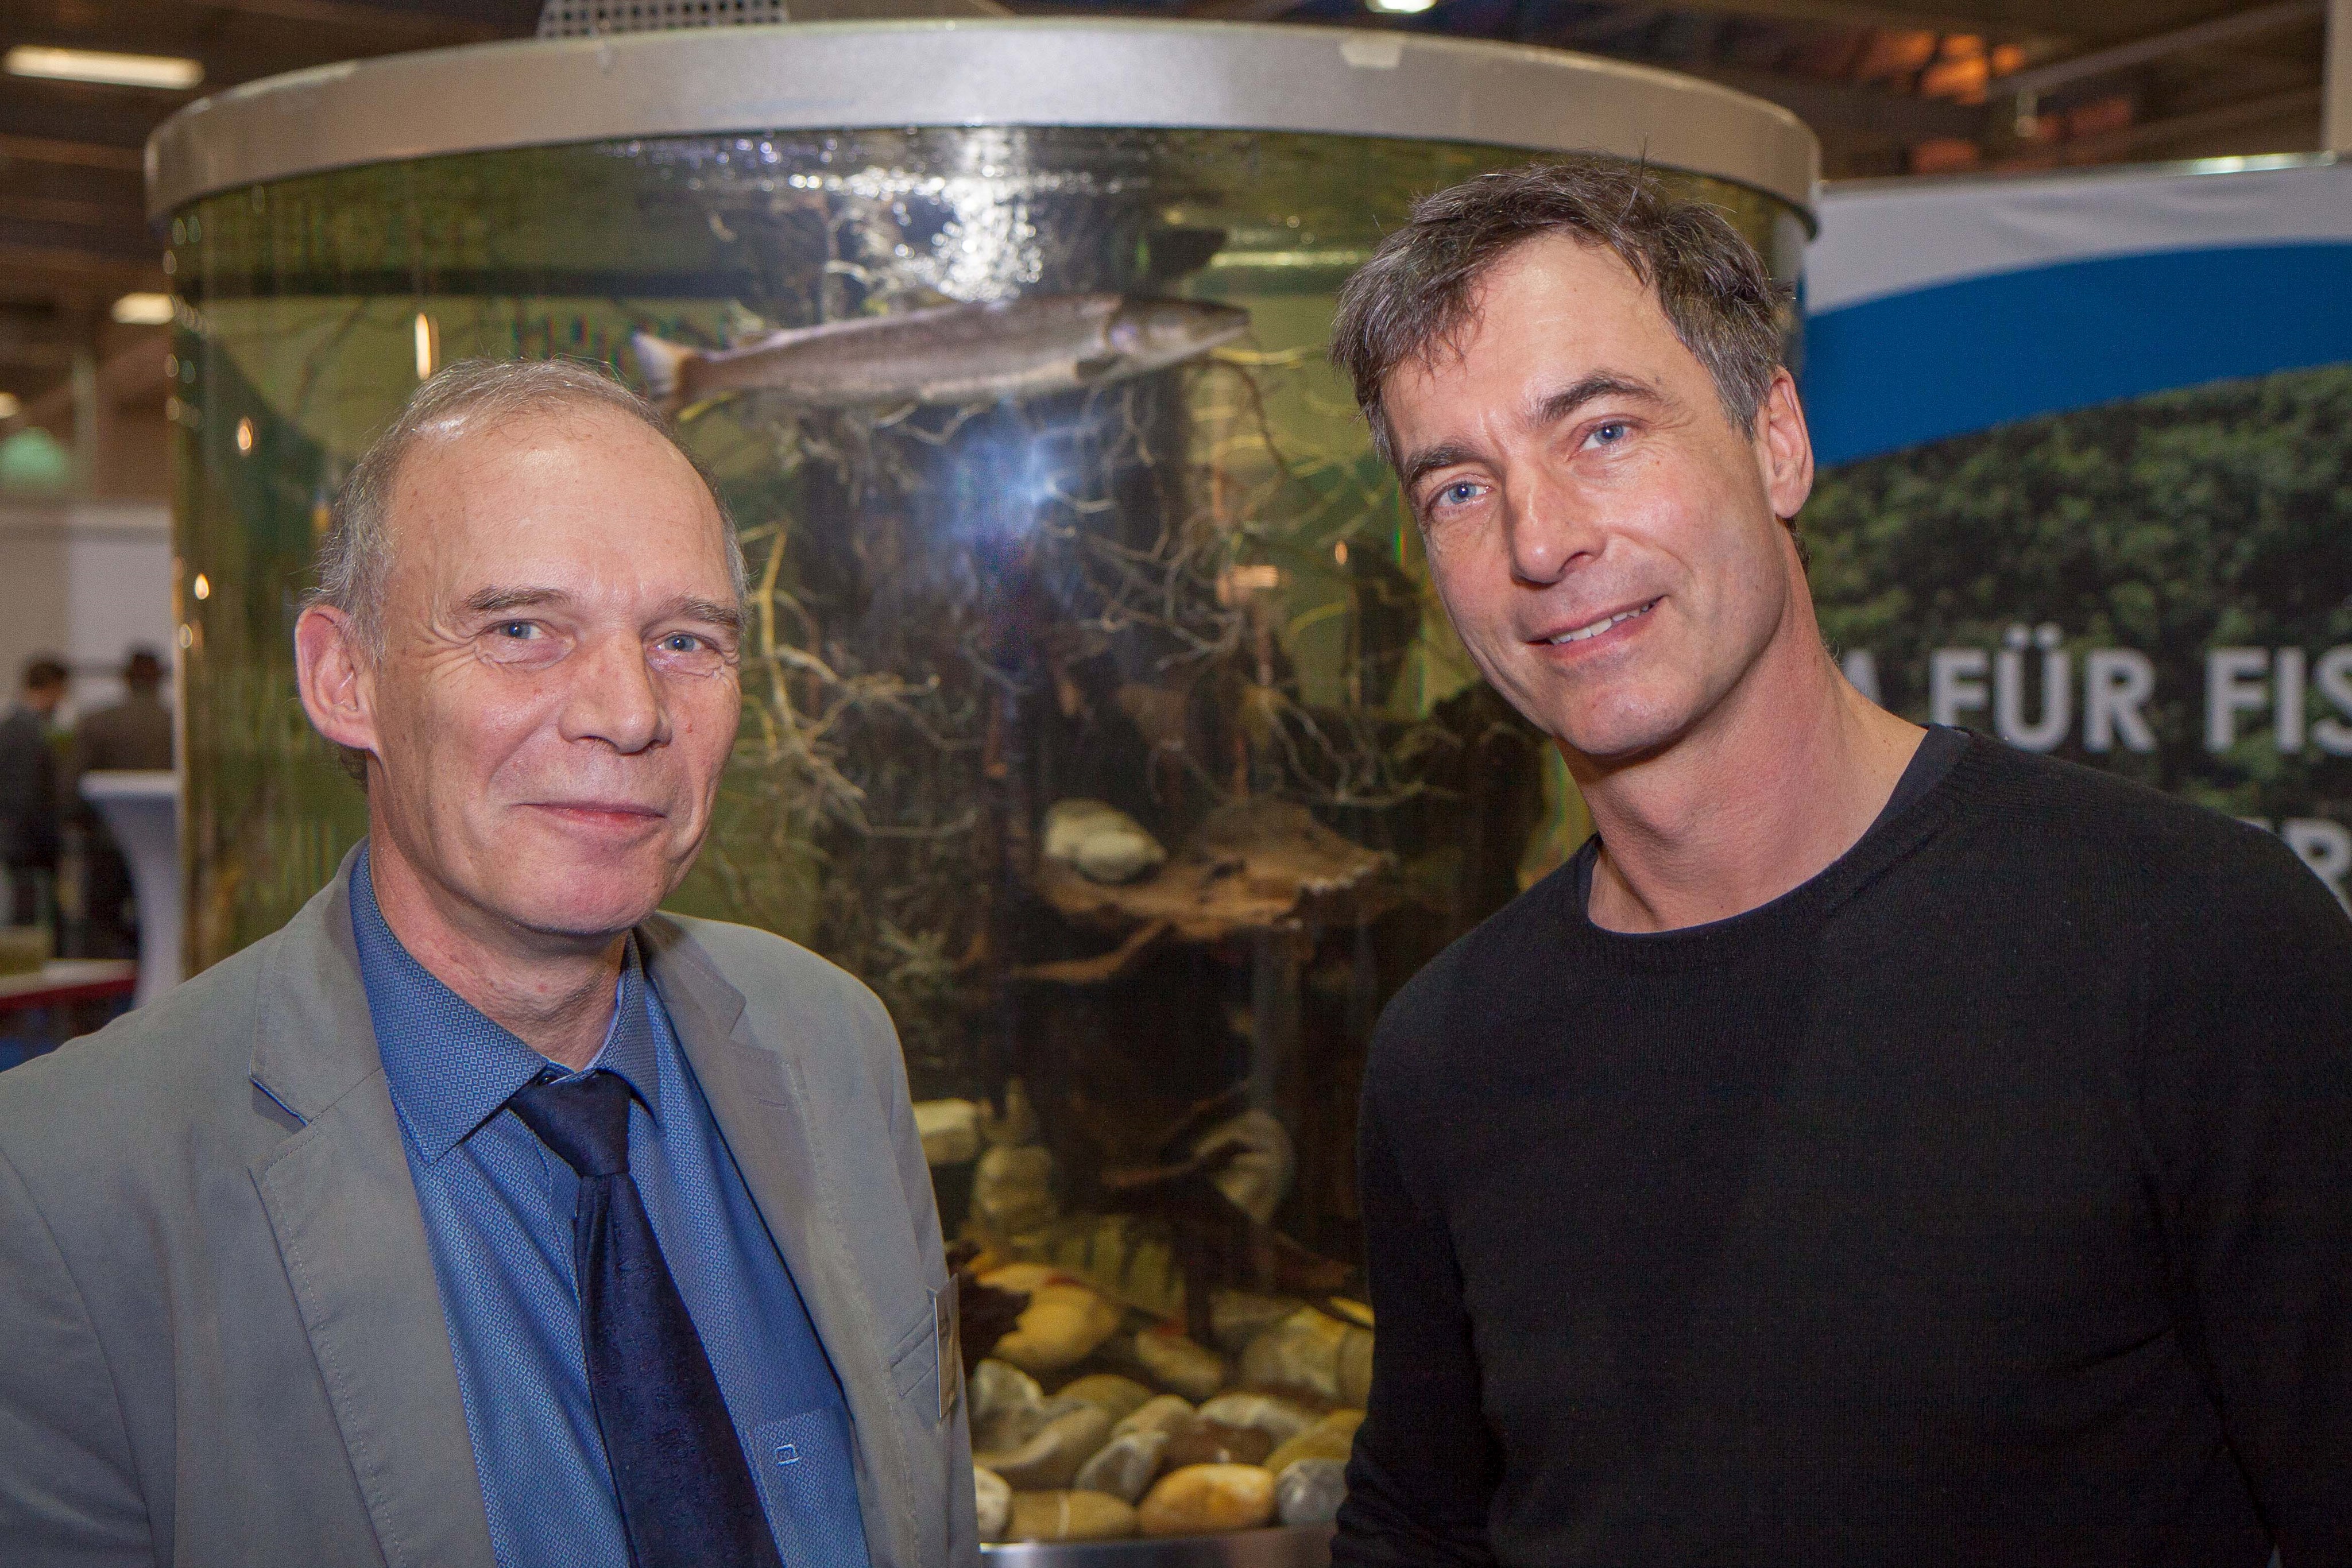 Bemühen sich als gemeinsam um den Huchen (im Hintergrund) und damit um das Ökosystem Fluss: Fischereifachberater Dr. Oliver Born und Filmemacher Florian Guthknecht.